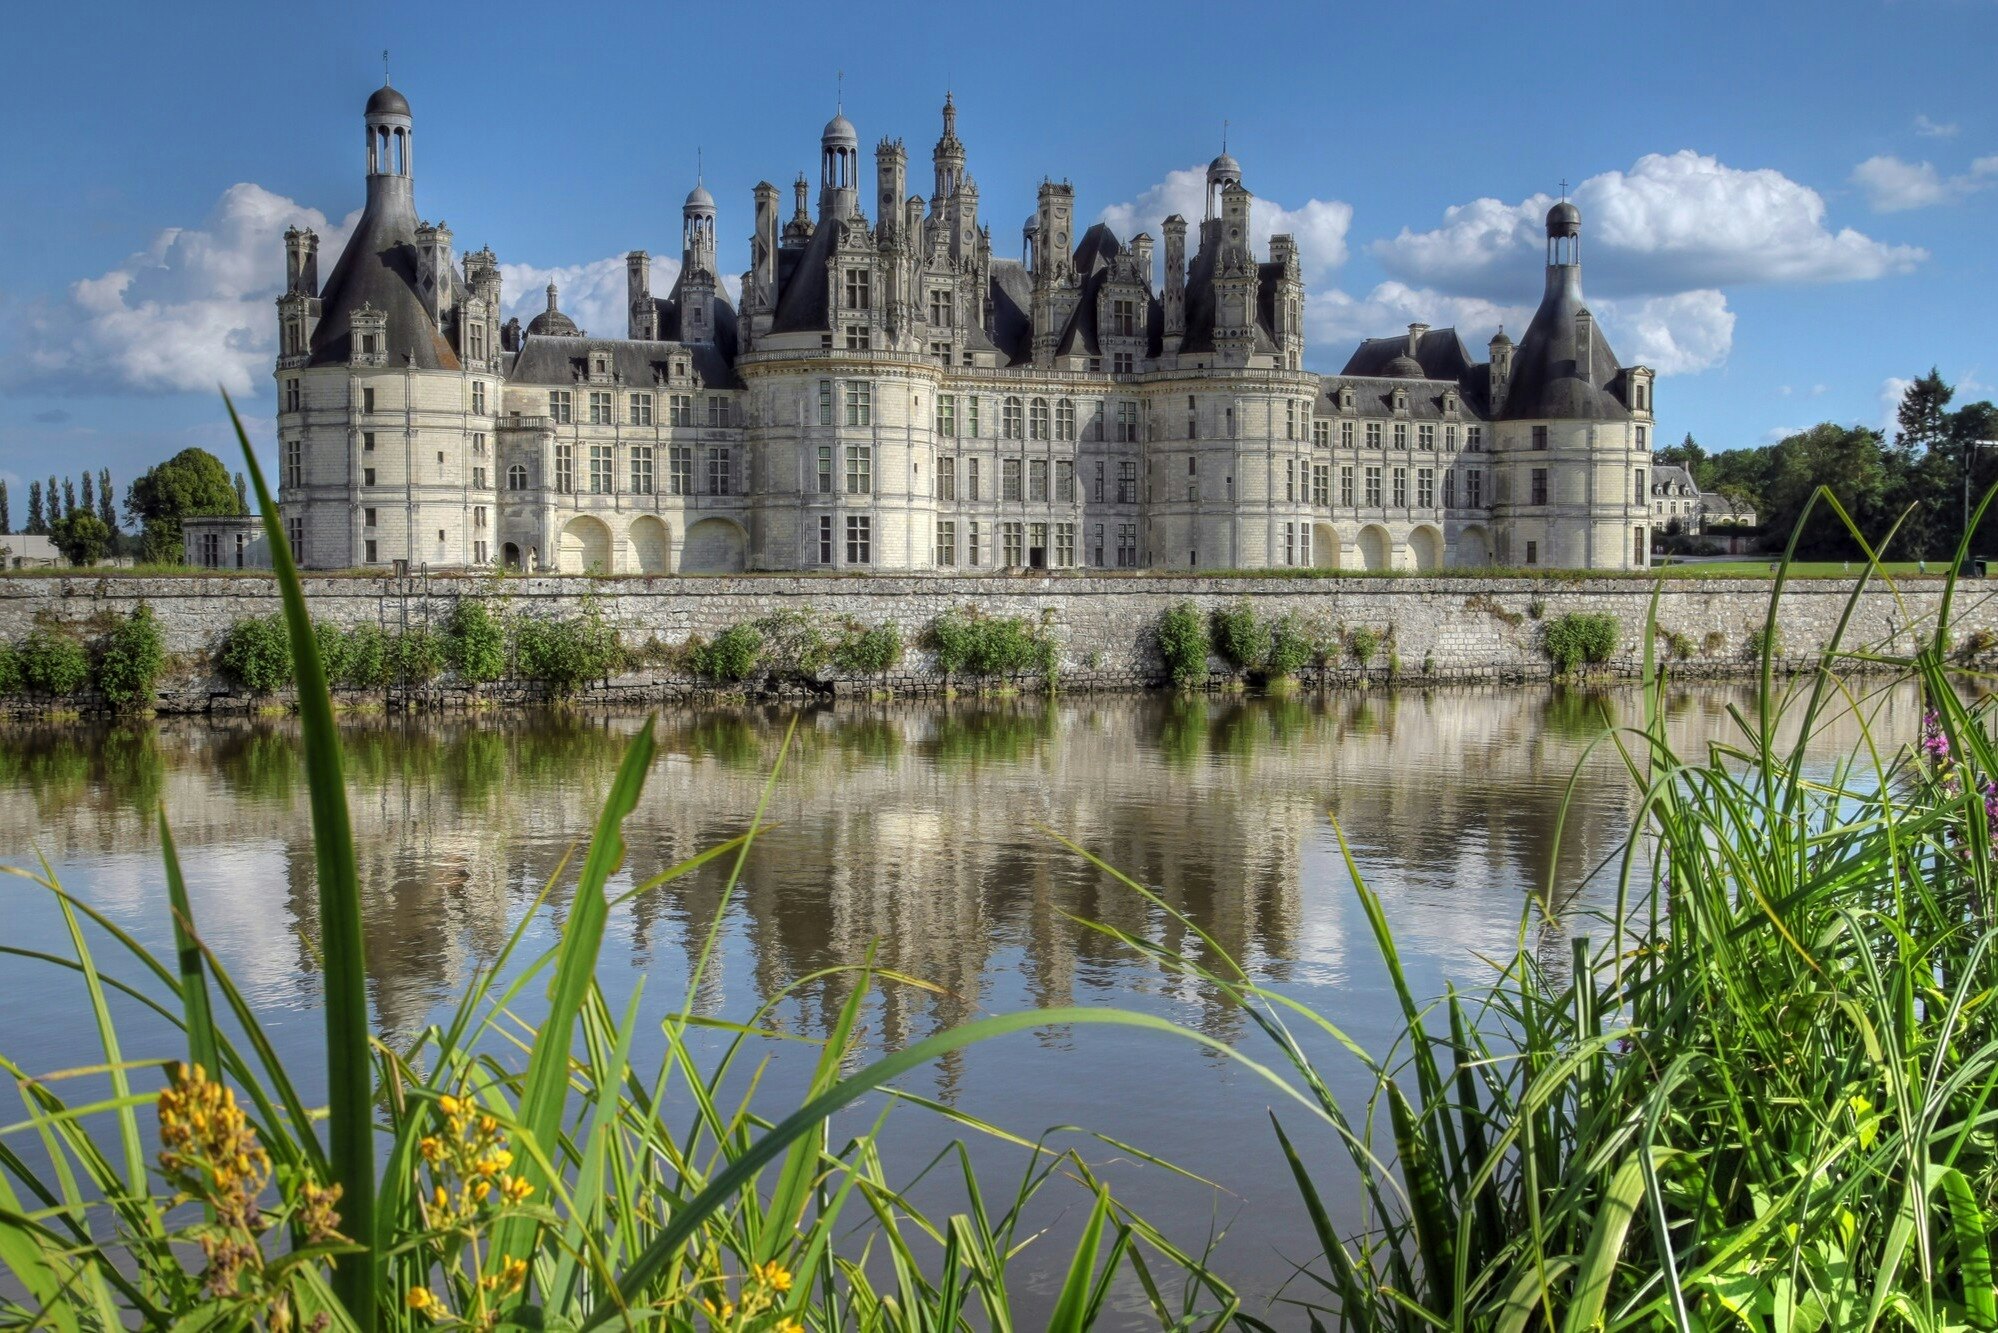 Tickets & Tours - Château de Chambord, Loire Valley - Viator